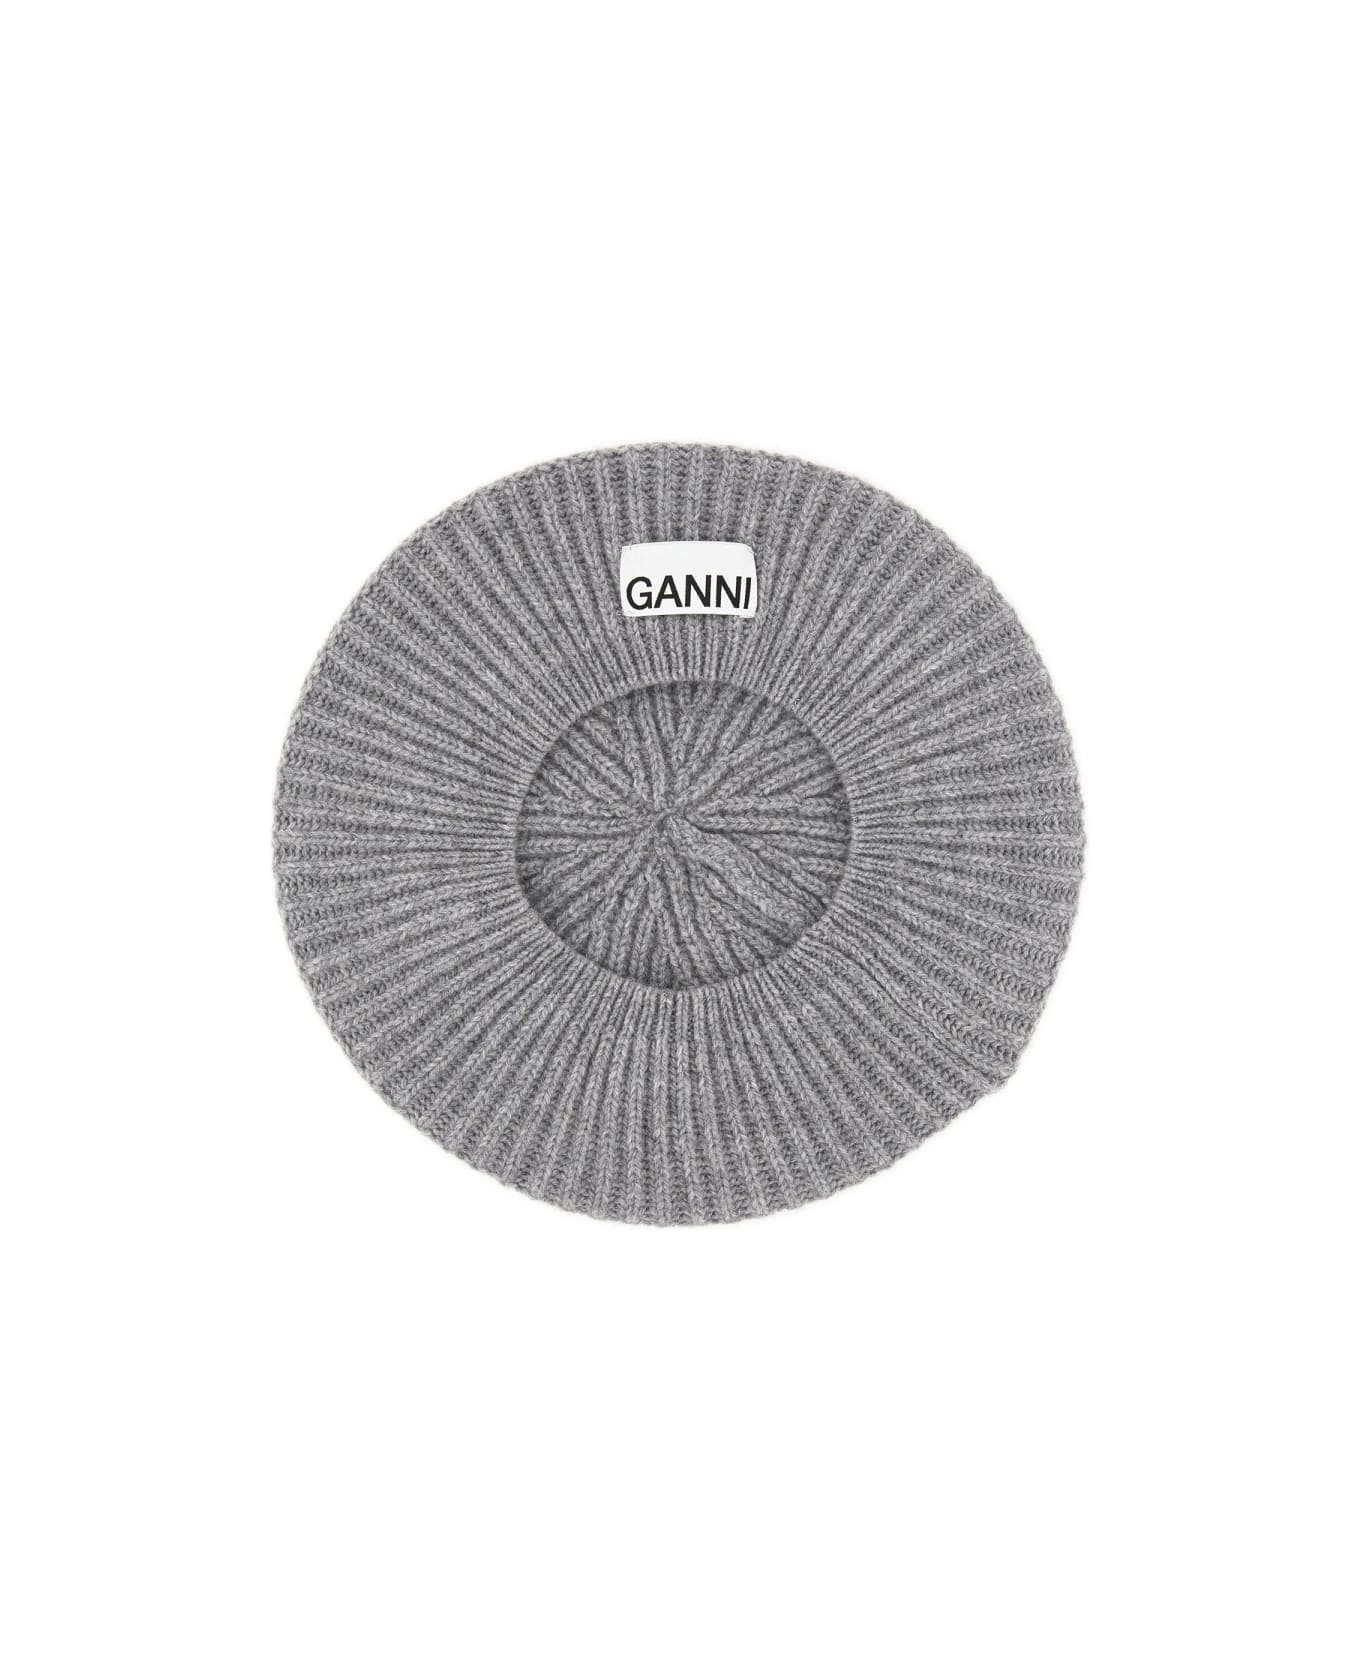 Ganni Ribbed Knit Beanie - GREY